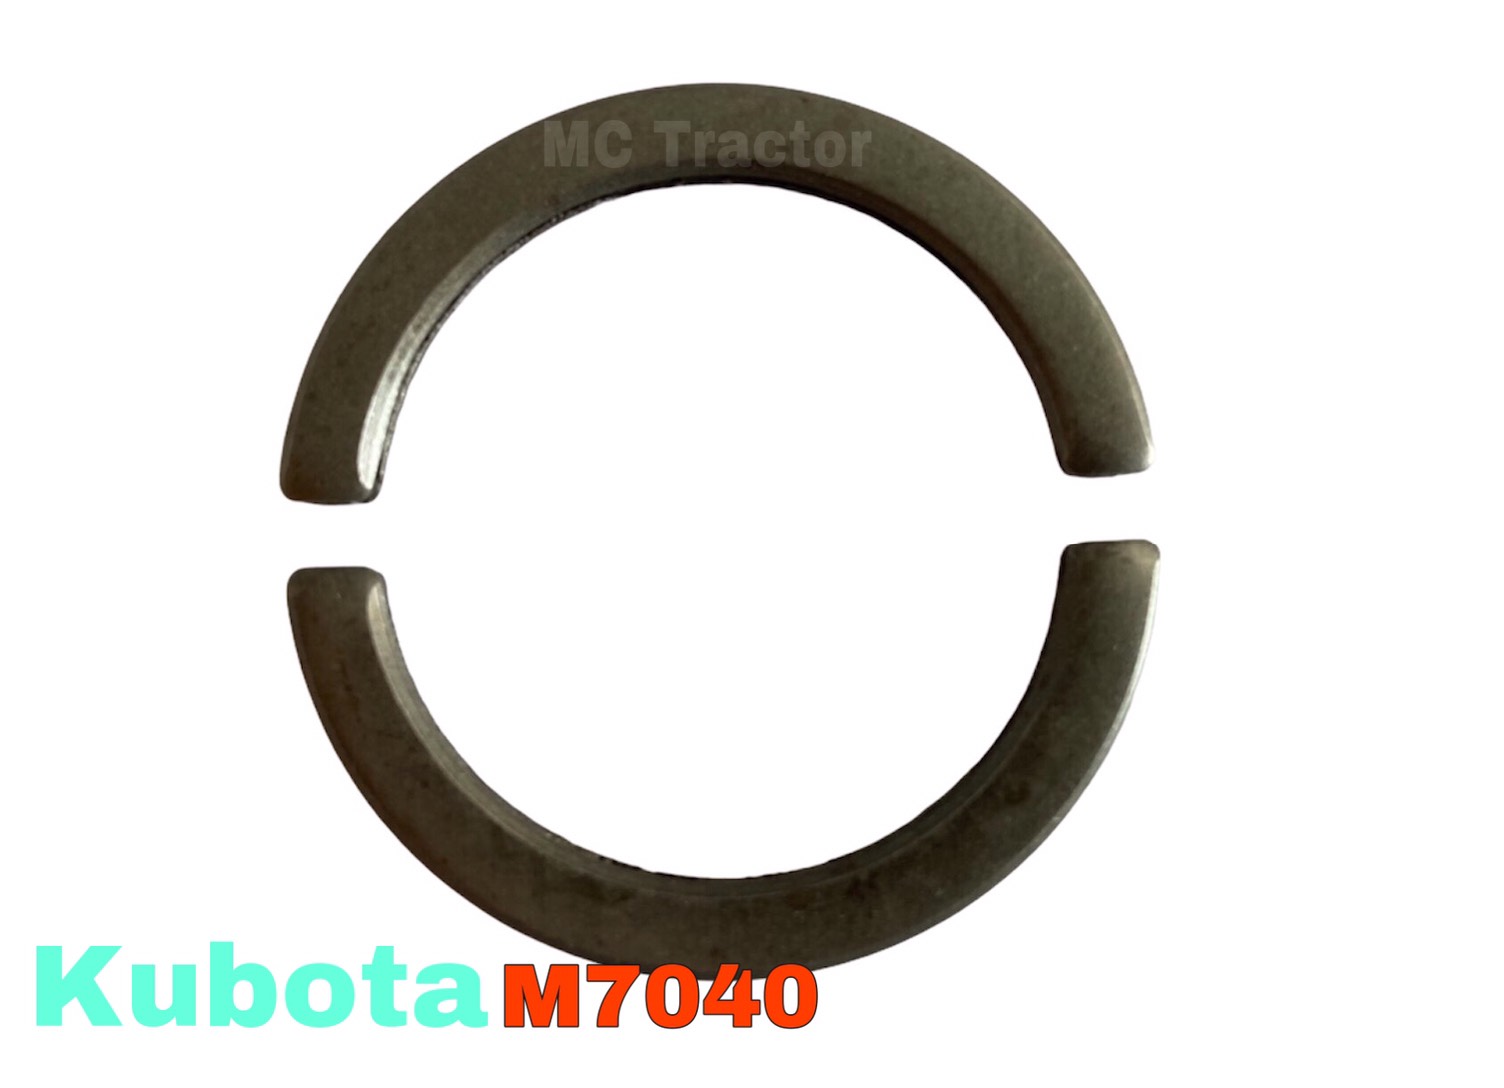 แหวนเกือกม้าล็อคดุมล้อหน้า คูโบต้าM7040 ( 1ชุดมี 2 ตัว)